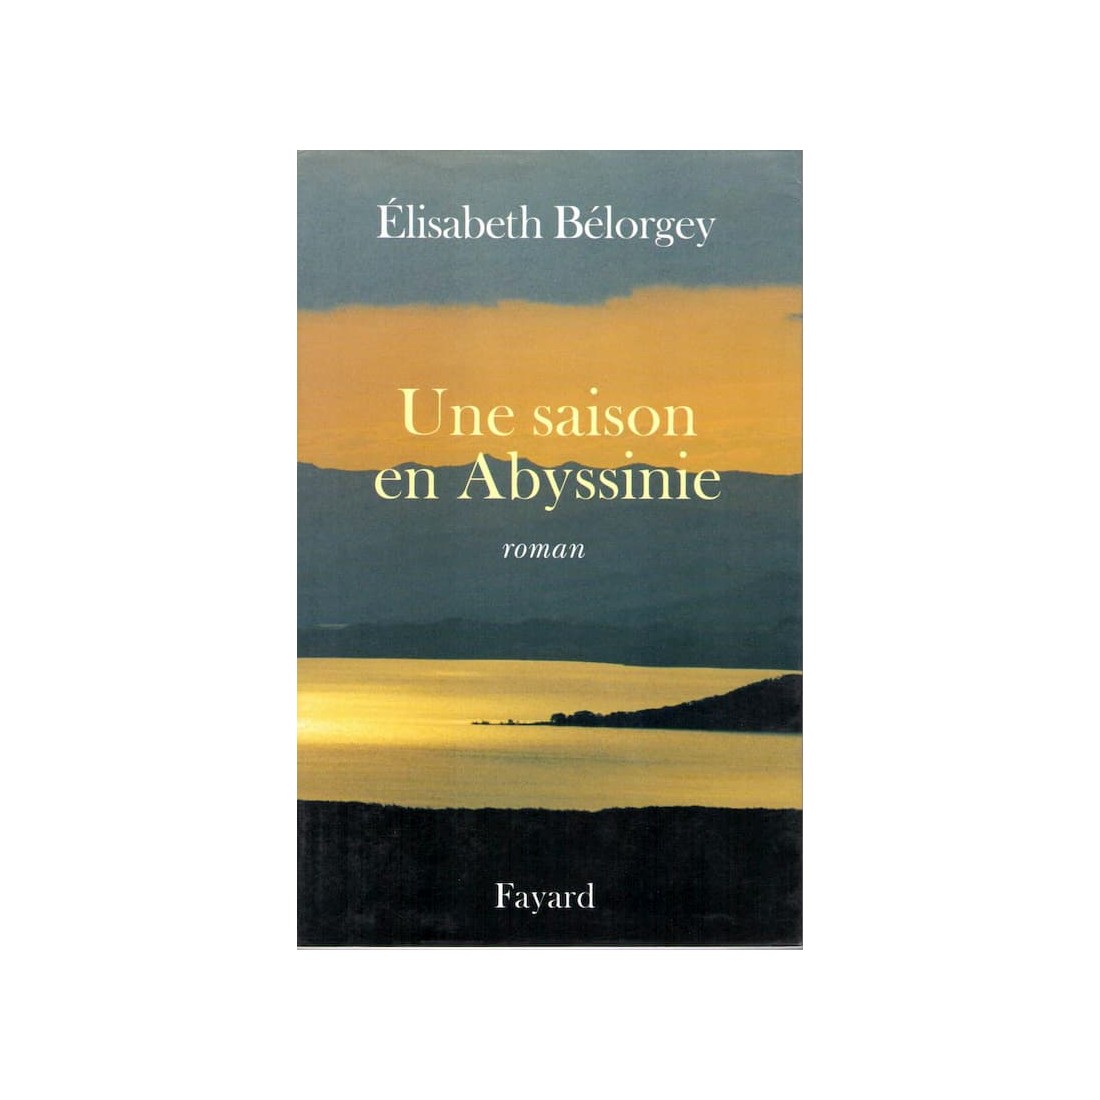 Une saison en Abyssinie - Roman de Elisabeth Bélorgey - Ocazlivres.com